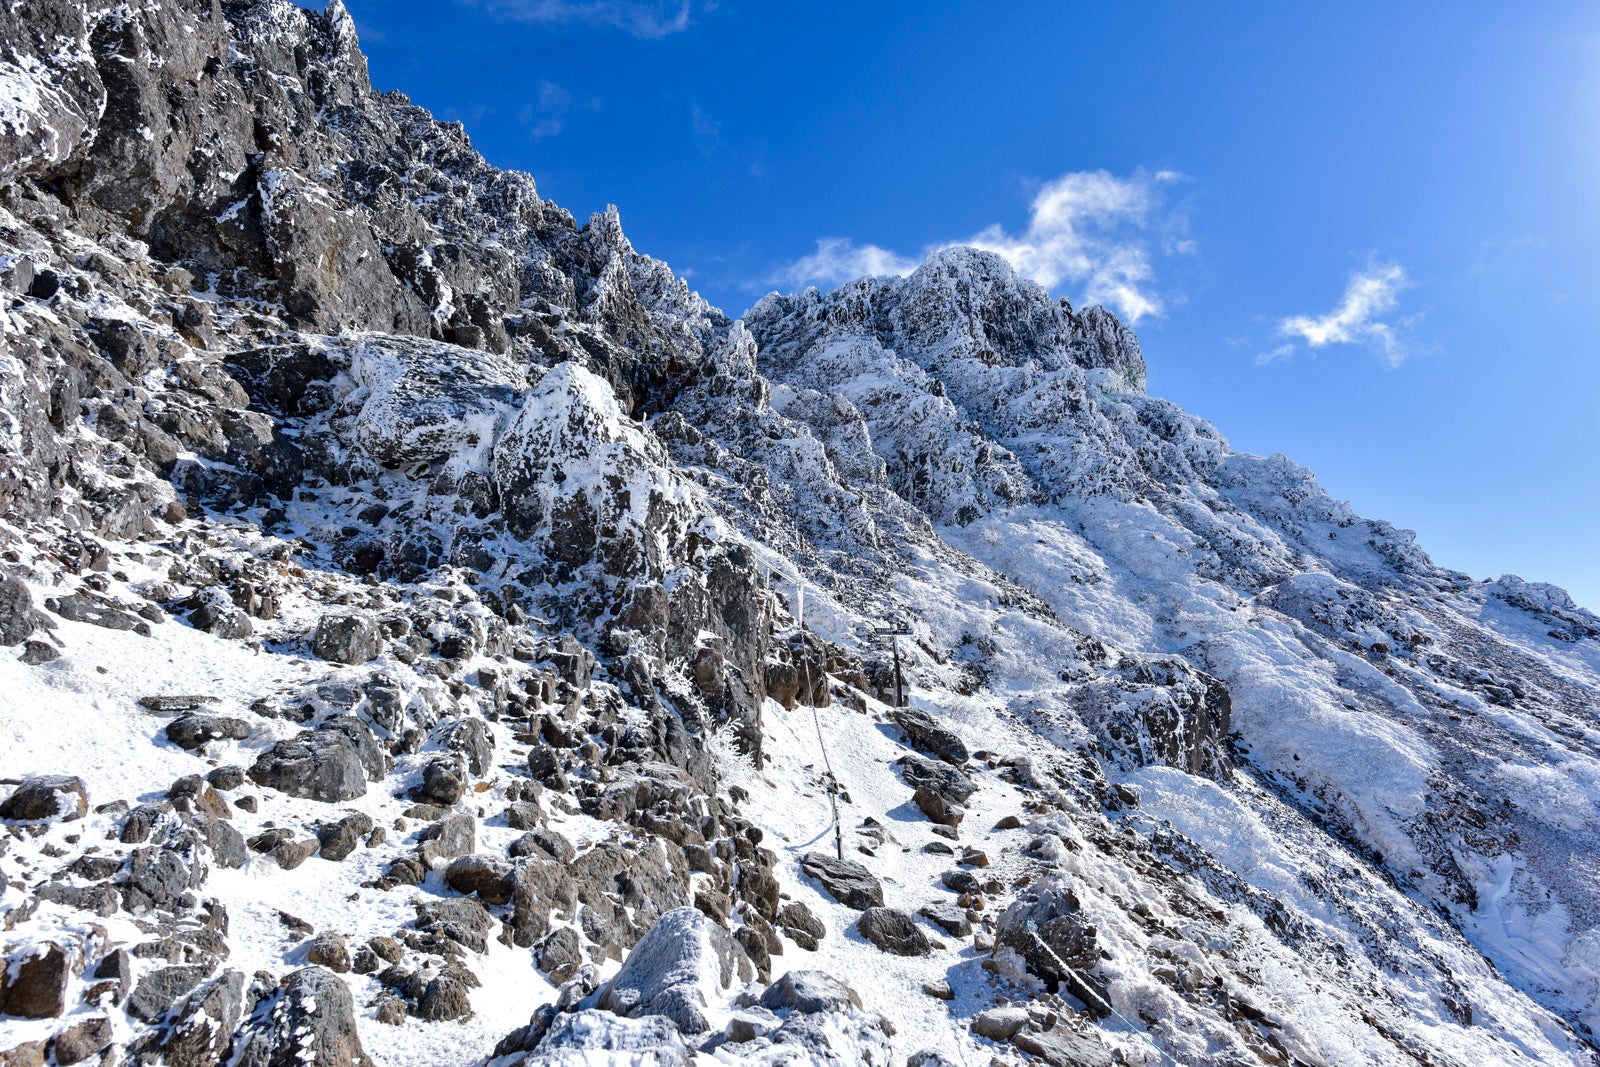 「凍てつく氷に包まれた文三郎尾根の登山道」の写真